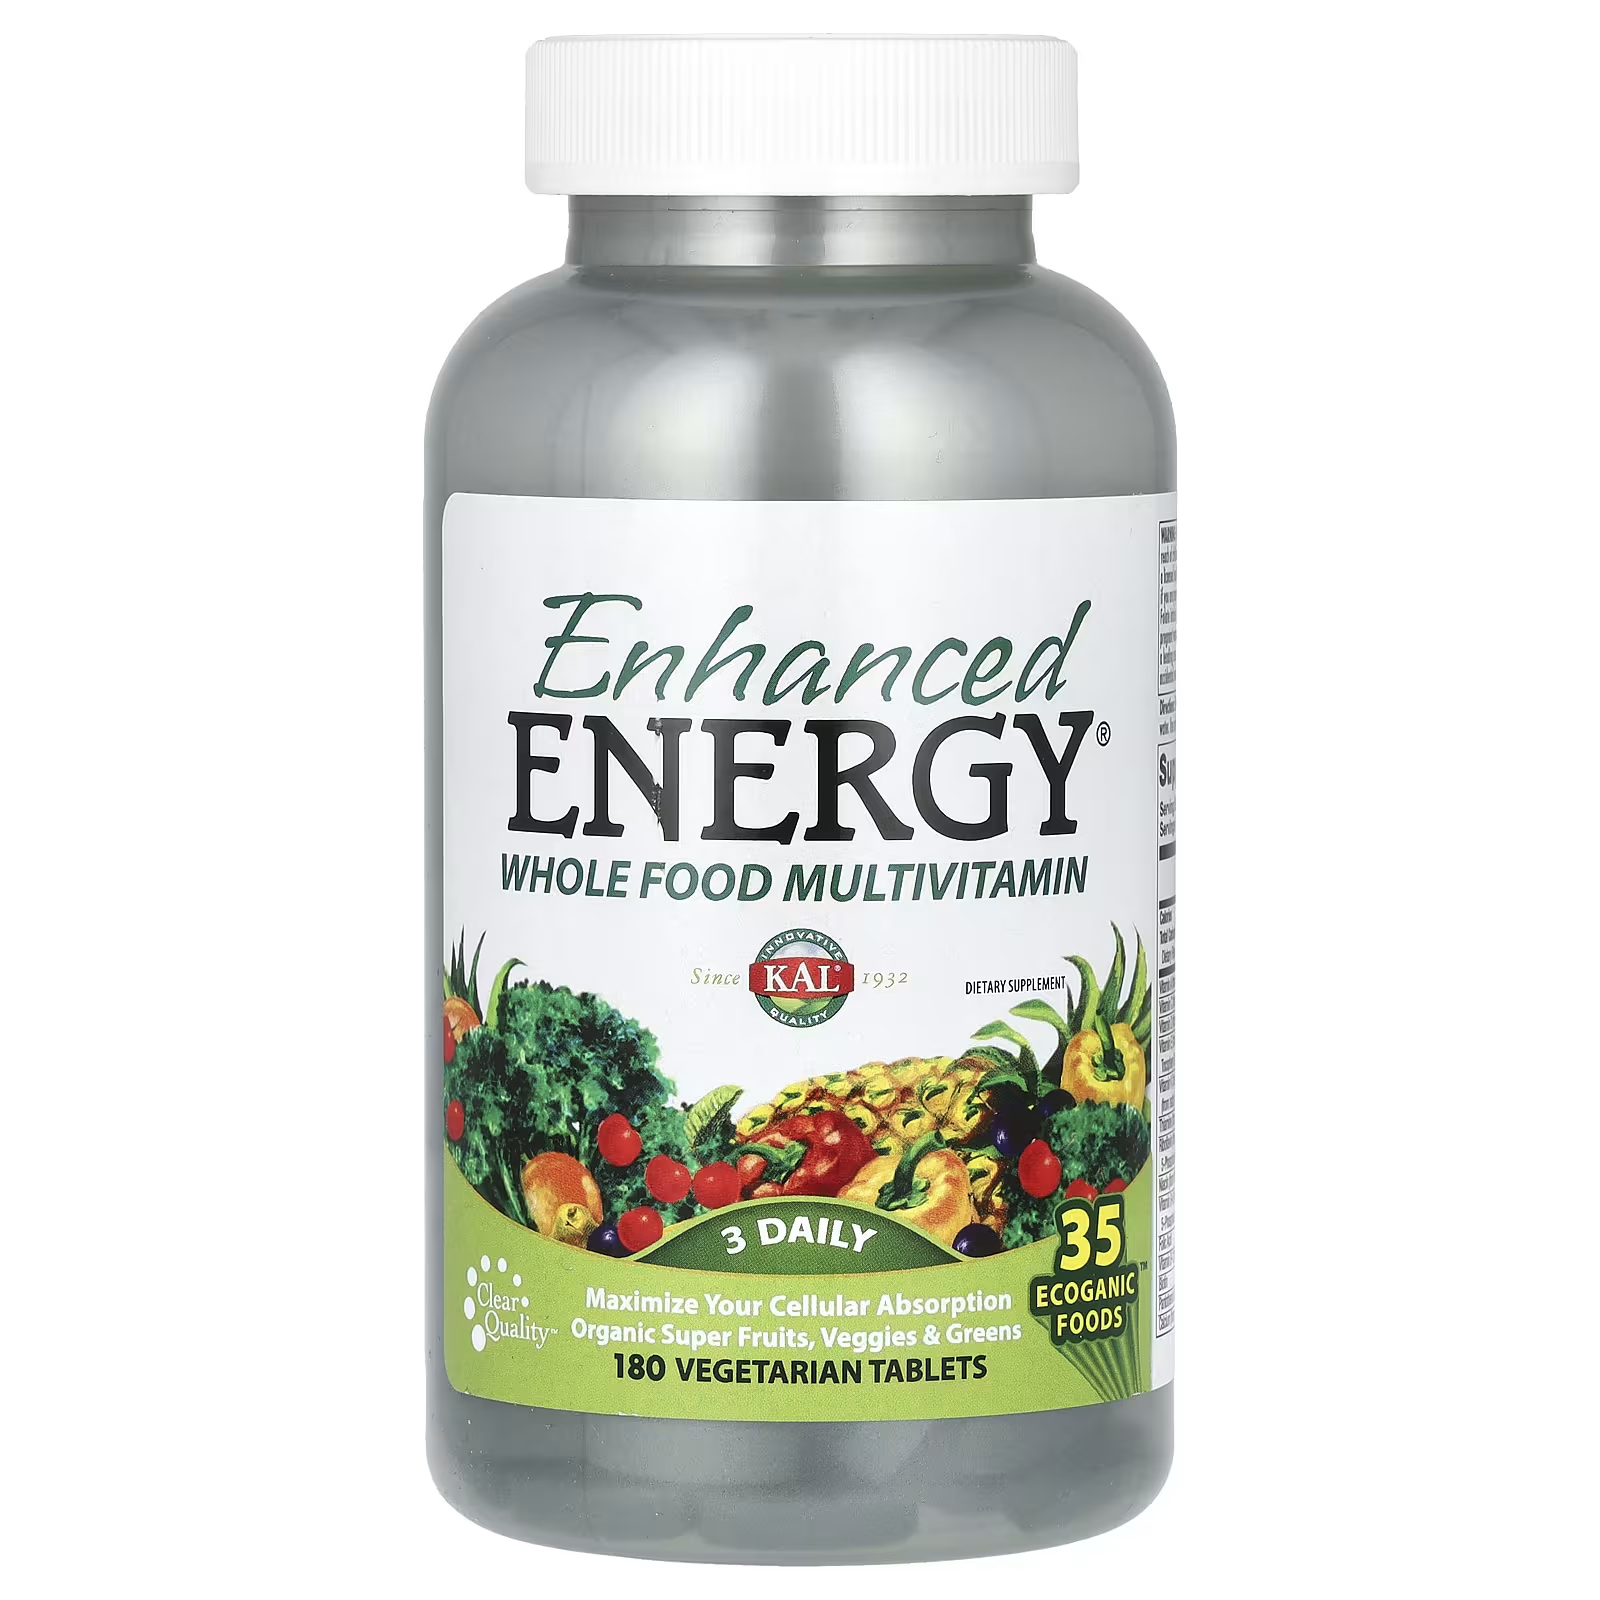 KAL Цельнопищевые мультивитамины Enhanced Energy, 180 вегетарианских таблеток pure essence one n only цельнопищевые мультивитамины 90 таблеток